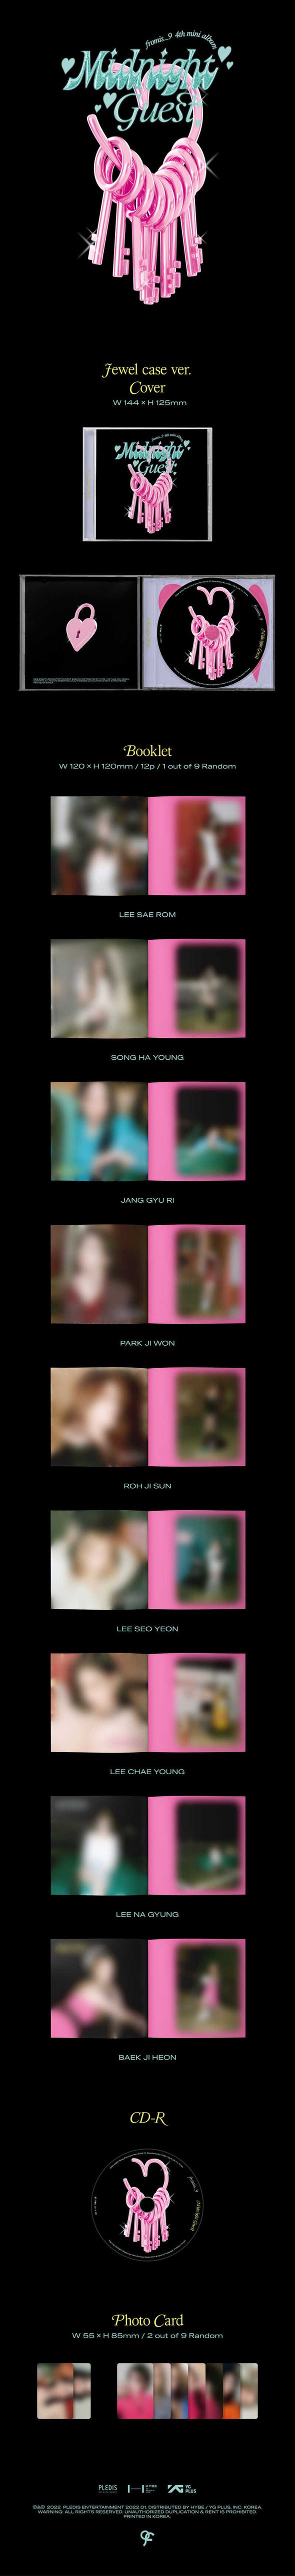 FROMIS_9 - Mini Album Vol. 4 - Midnight Guest-Jewel - Kpop Music 사랑해요